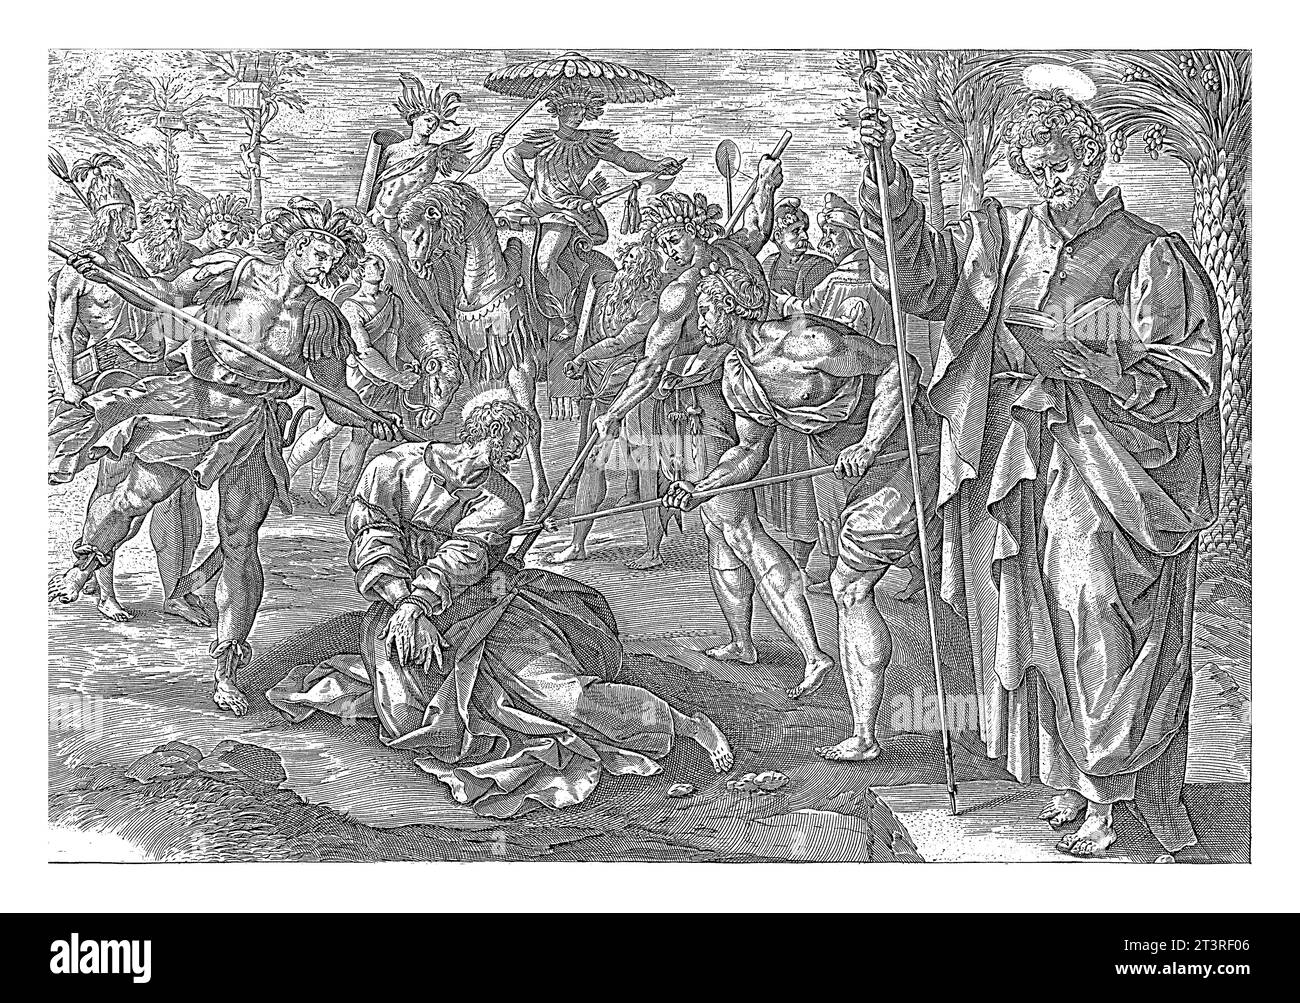 Martyre de Tomas, Hendrick Goltzius, d'après Maerten de vos, 1646 Tomas est poignardé à mort avec des lances par des Indiens. A droite de la scène de son m Banque D'Images